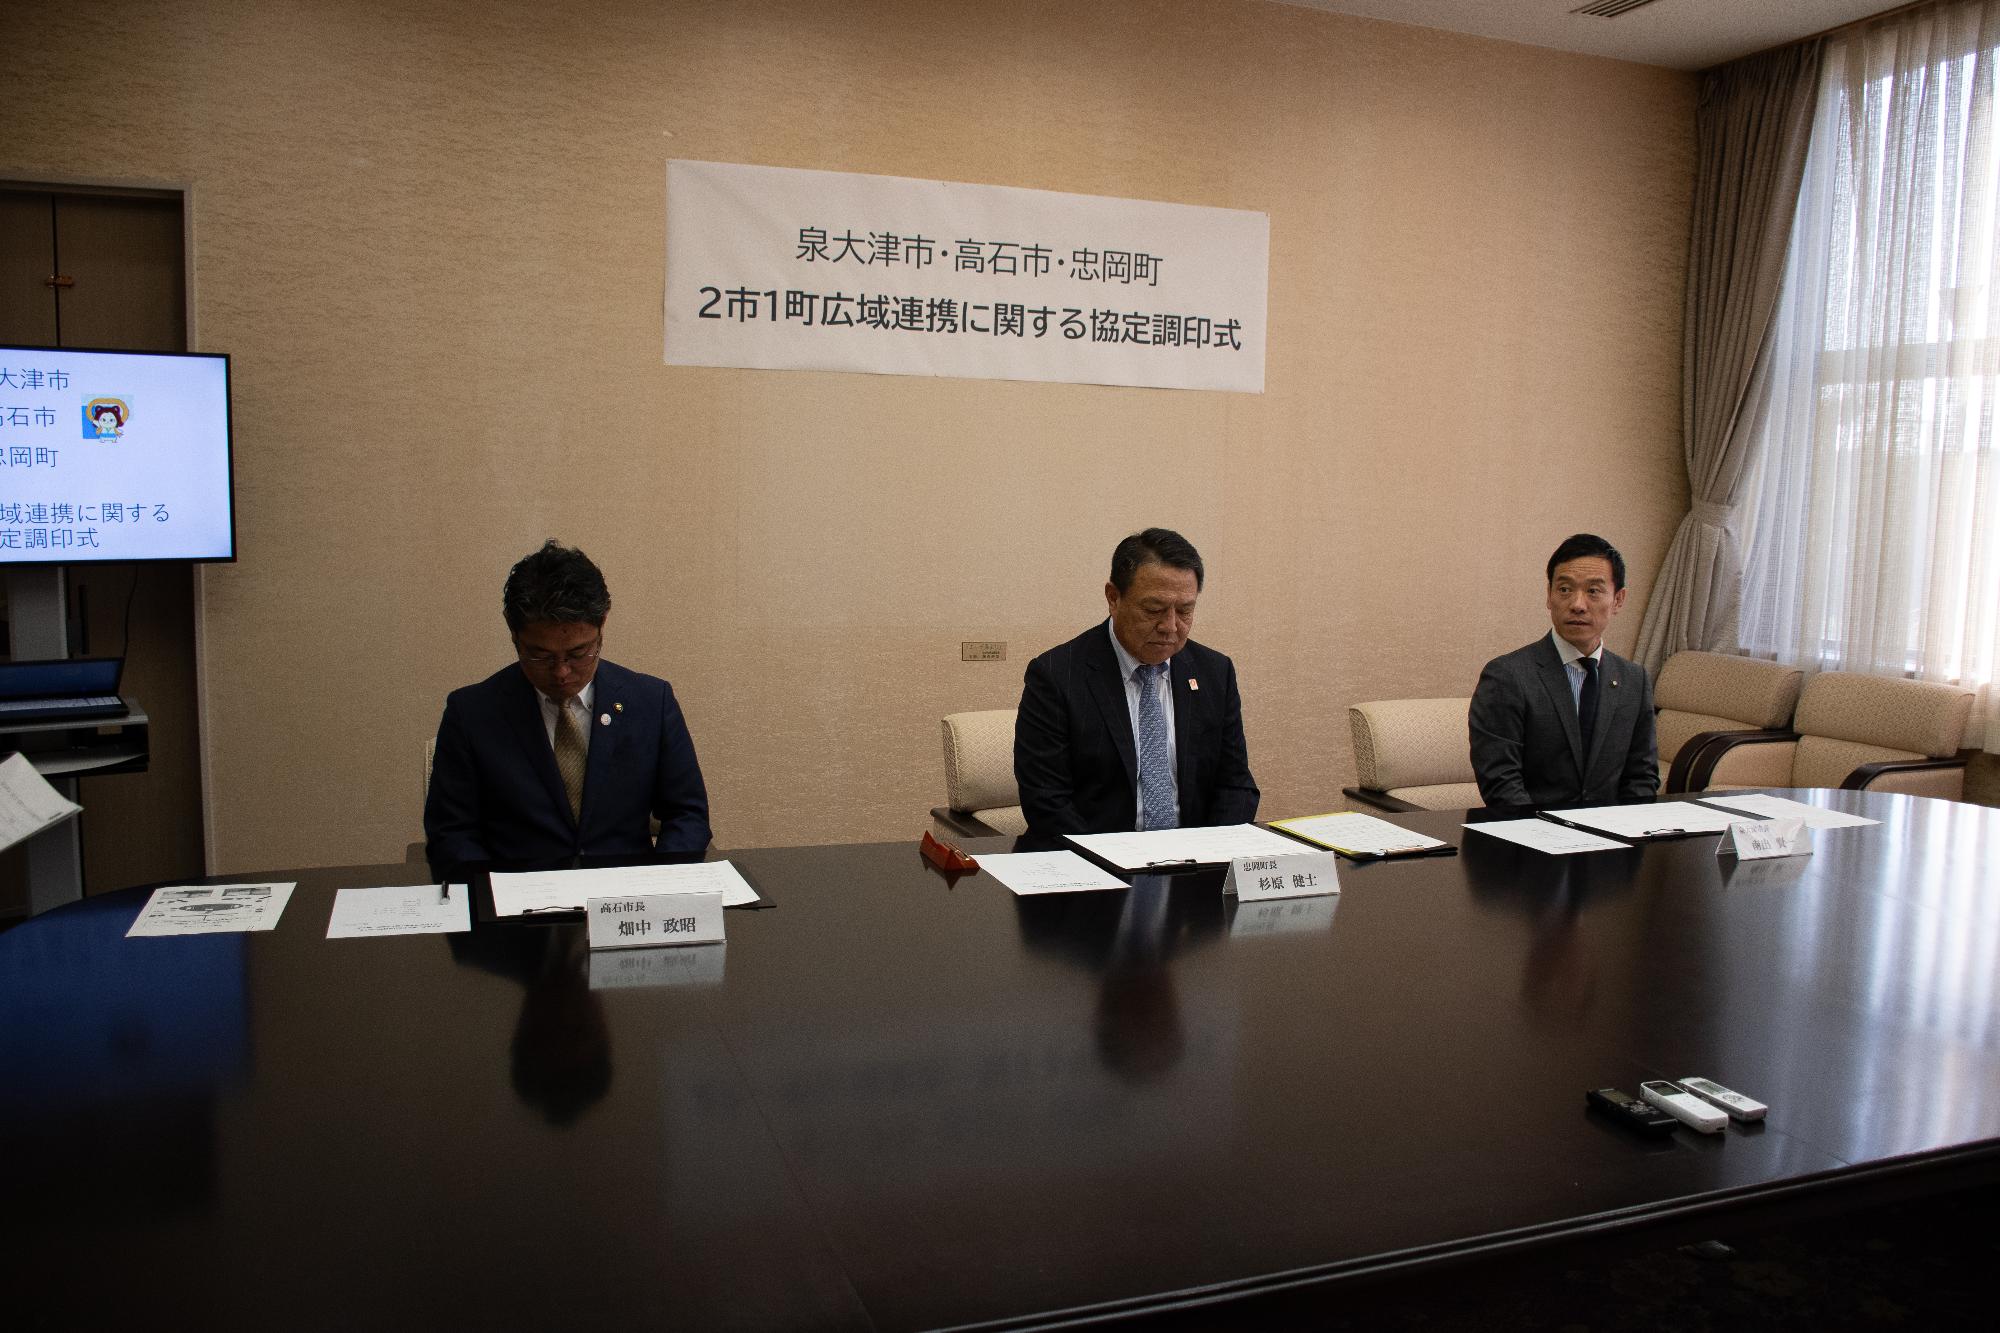 左から高石市長、忠岡町長、泉大津市長が椅子に座って並んでいる写真